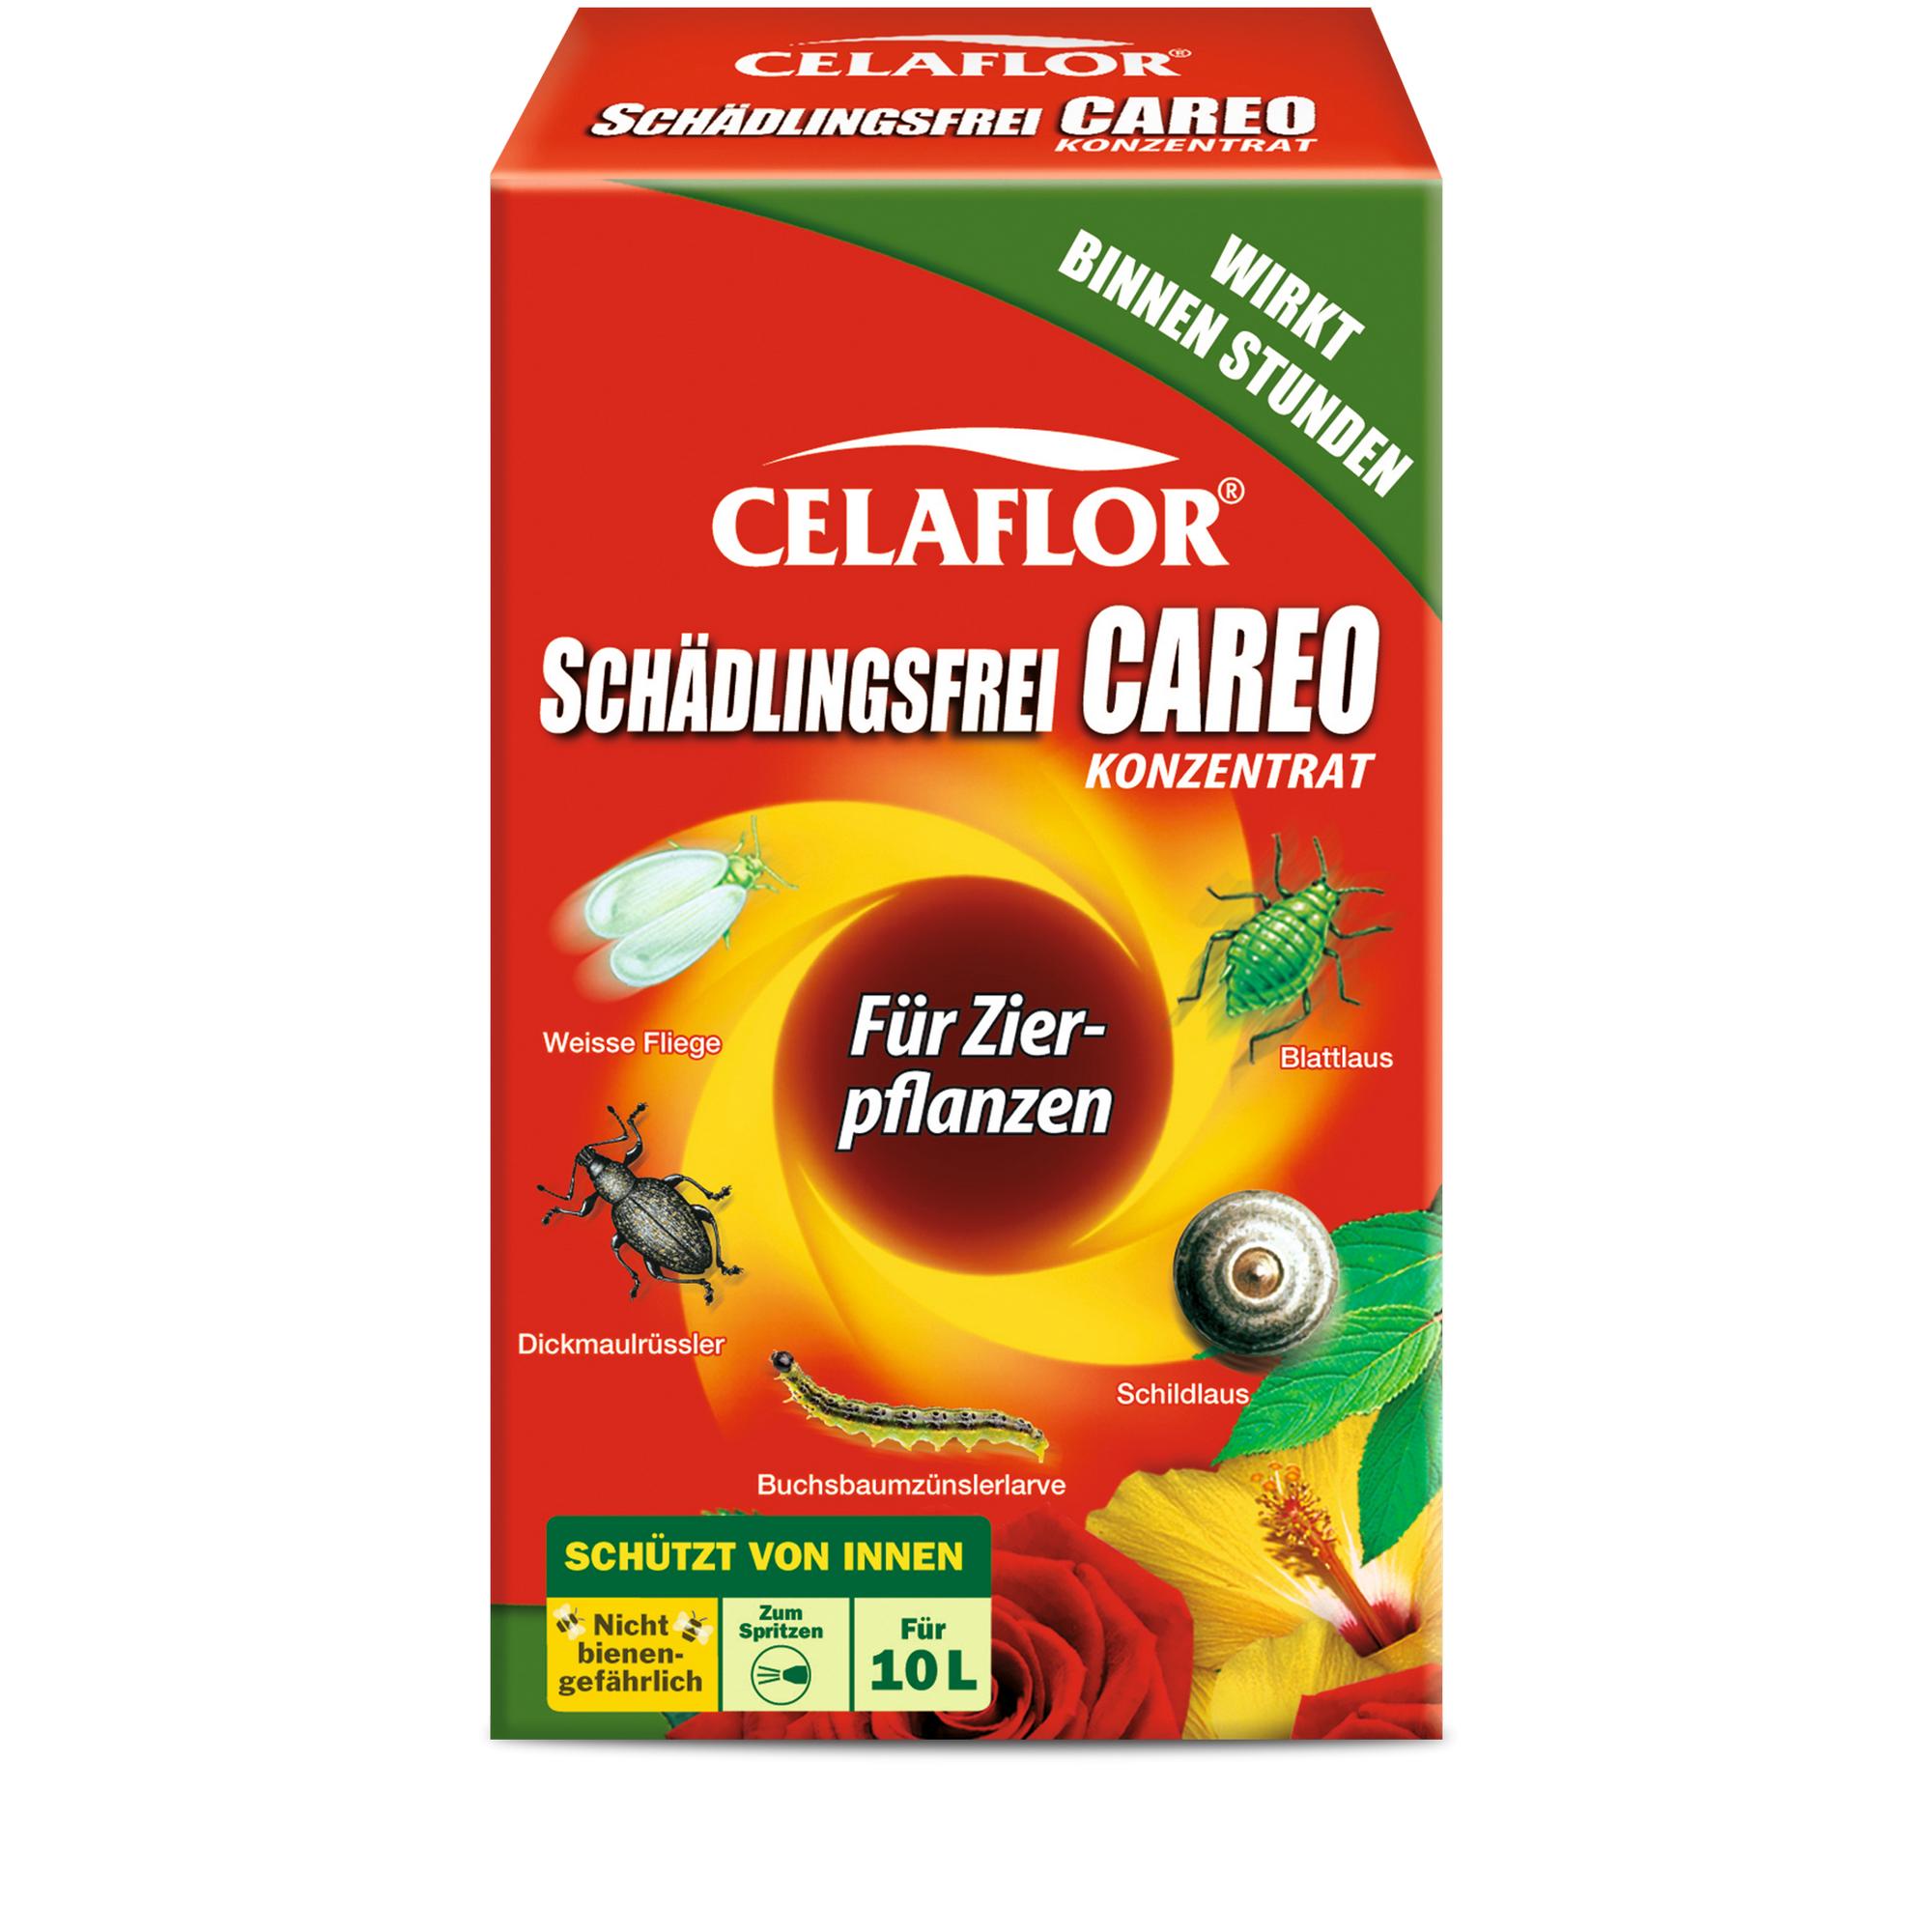 Schädlingsfrei Careo® Konzentrat für Zierpflanzen 100 ml + product picture